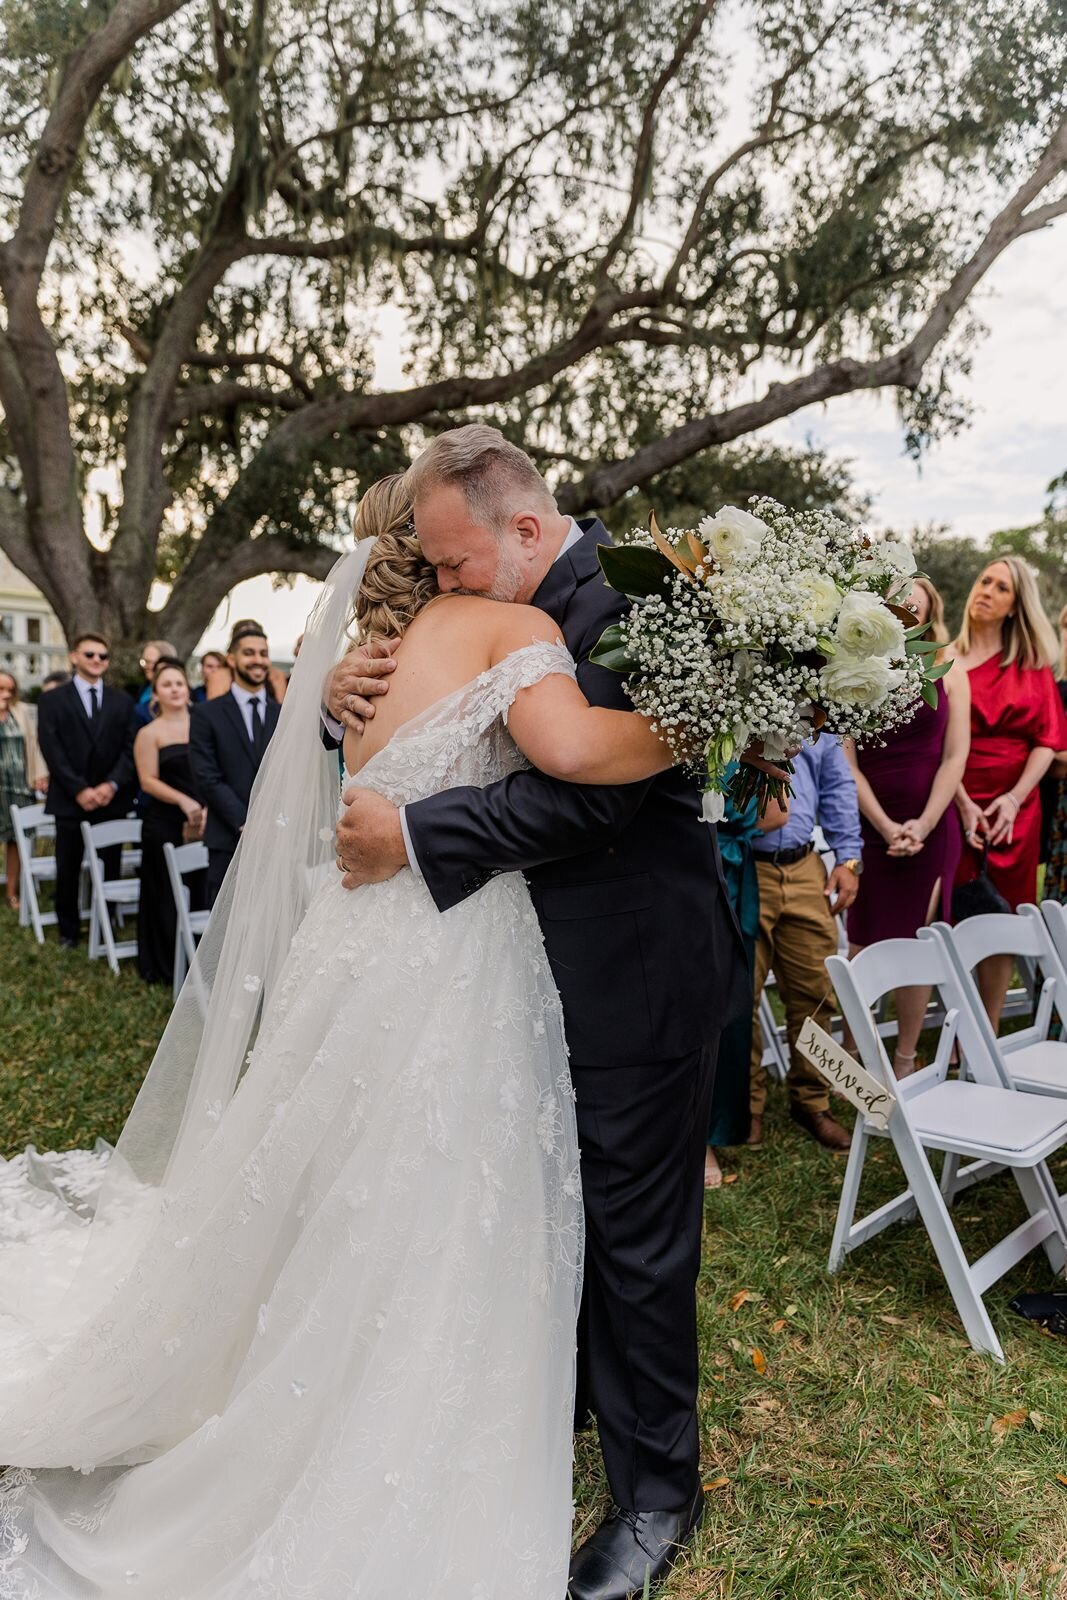 Father hugging daughter at wedding ceremony at Bella Cosa, Lake Wales, Florida